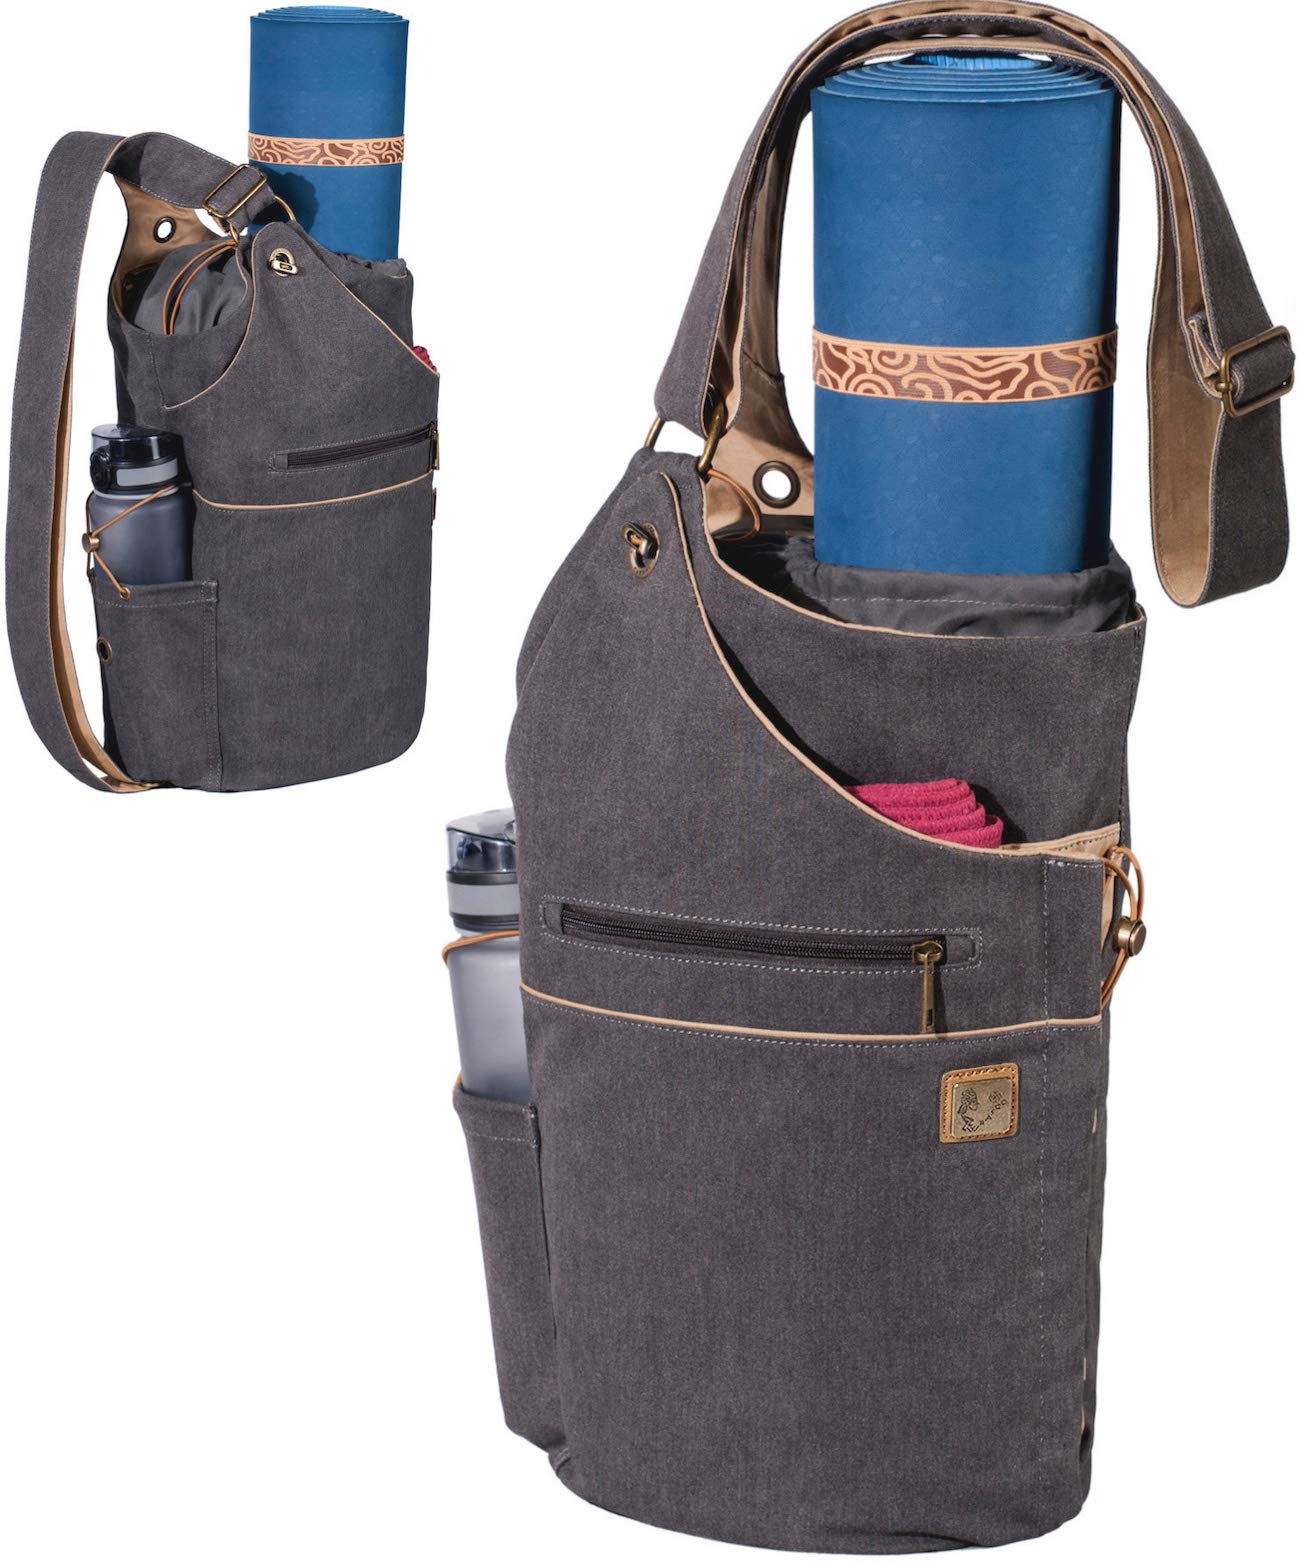 Adjustable Yoga Mat Bag Argos Carrier With Shoulder Strap Portable